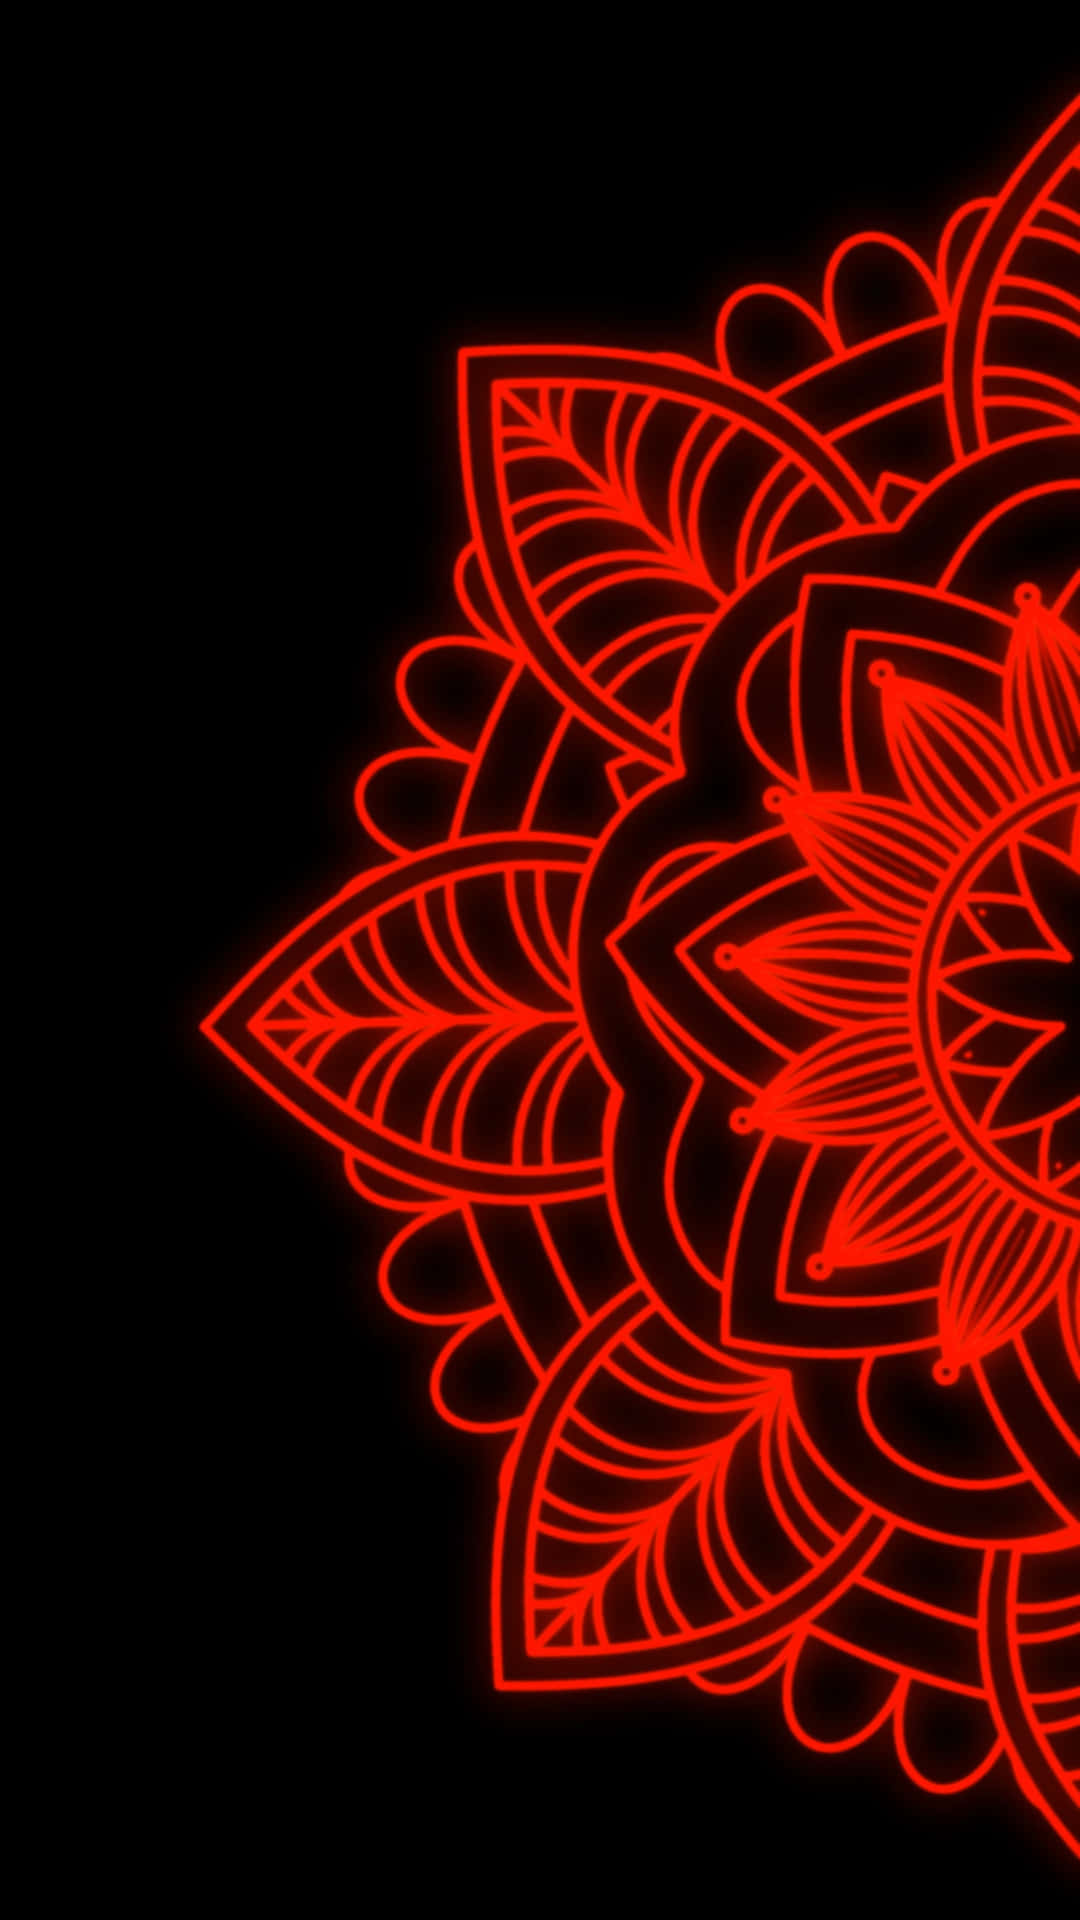 Captivating Mandala Artwork On Intricate Background